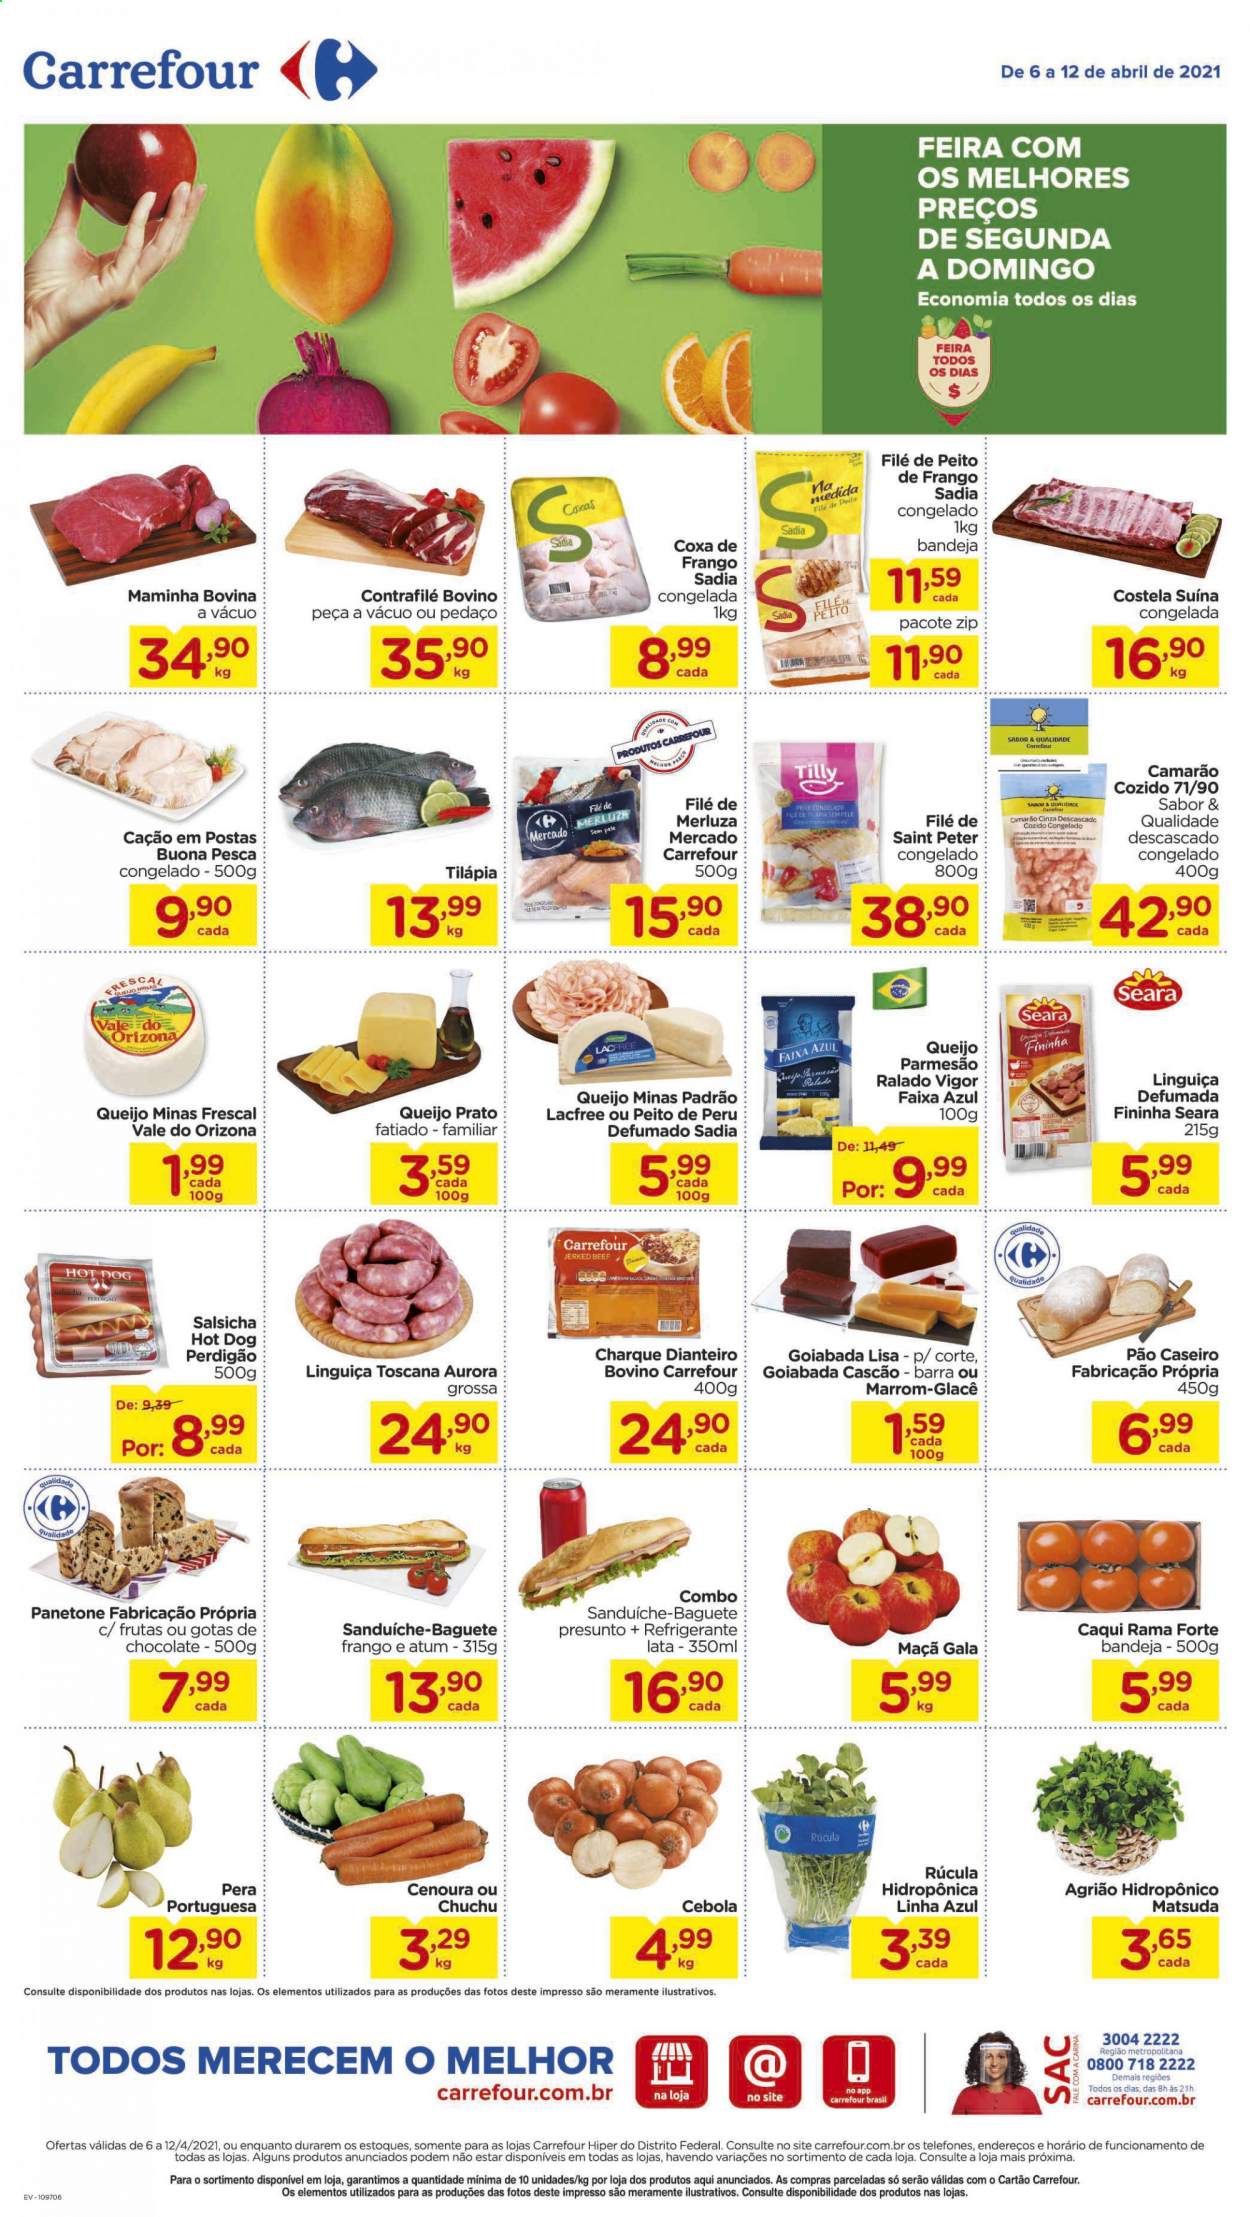 thumbnail - Folheto Carrefour Hiper - 06/04/2021 - 12/04/2021 - Produtos em promoção - maçã, pera, chuchu, cebola, cenoura, rúcula, costela, costela suína, sanduiche, pão, baguete, goiabada, peito de frango, peito de peru, perú, Perdigão, alcatra, camarão, merluza, atum, tilapia, hot dog, presunto, jerked beef, linguiça, salsicha, linguiça toscana, queijo, queijo minas, queijo prato, parmesão, Aurora, refrigerante, bandeja, prato, Vigor. Página 1.